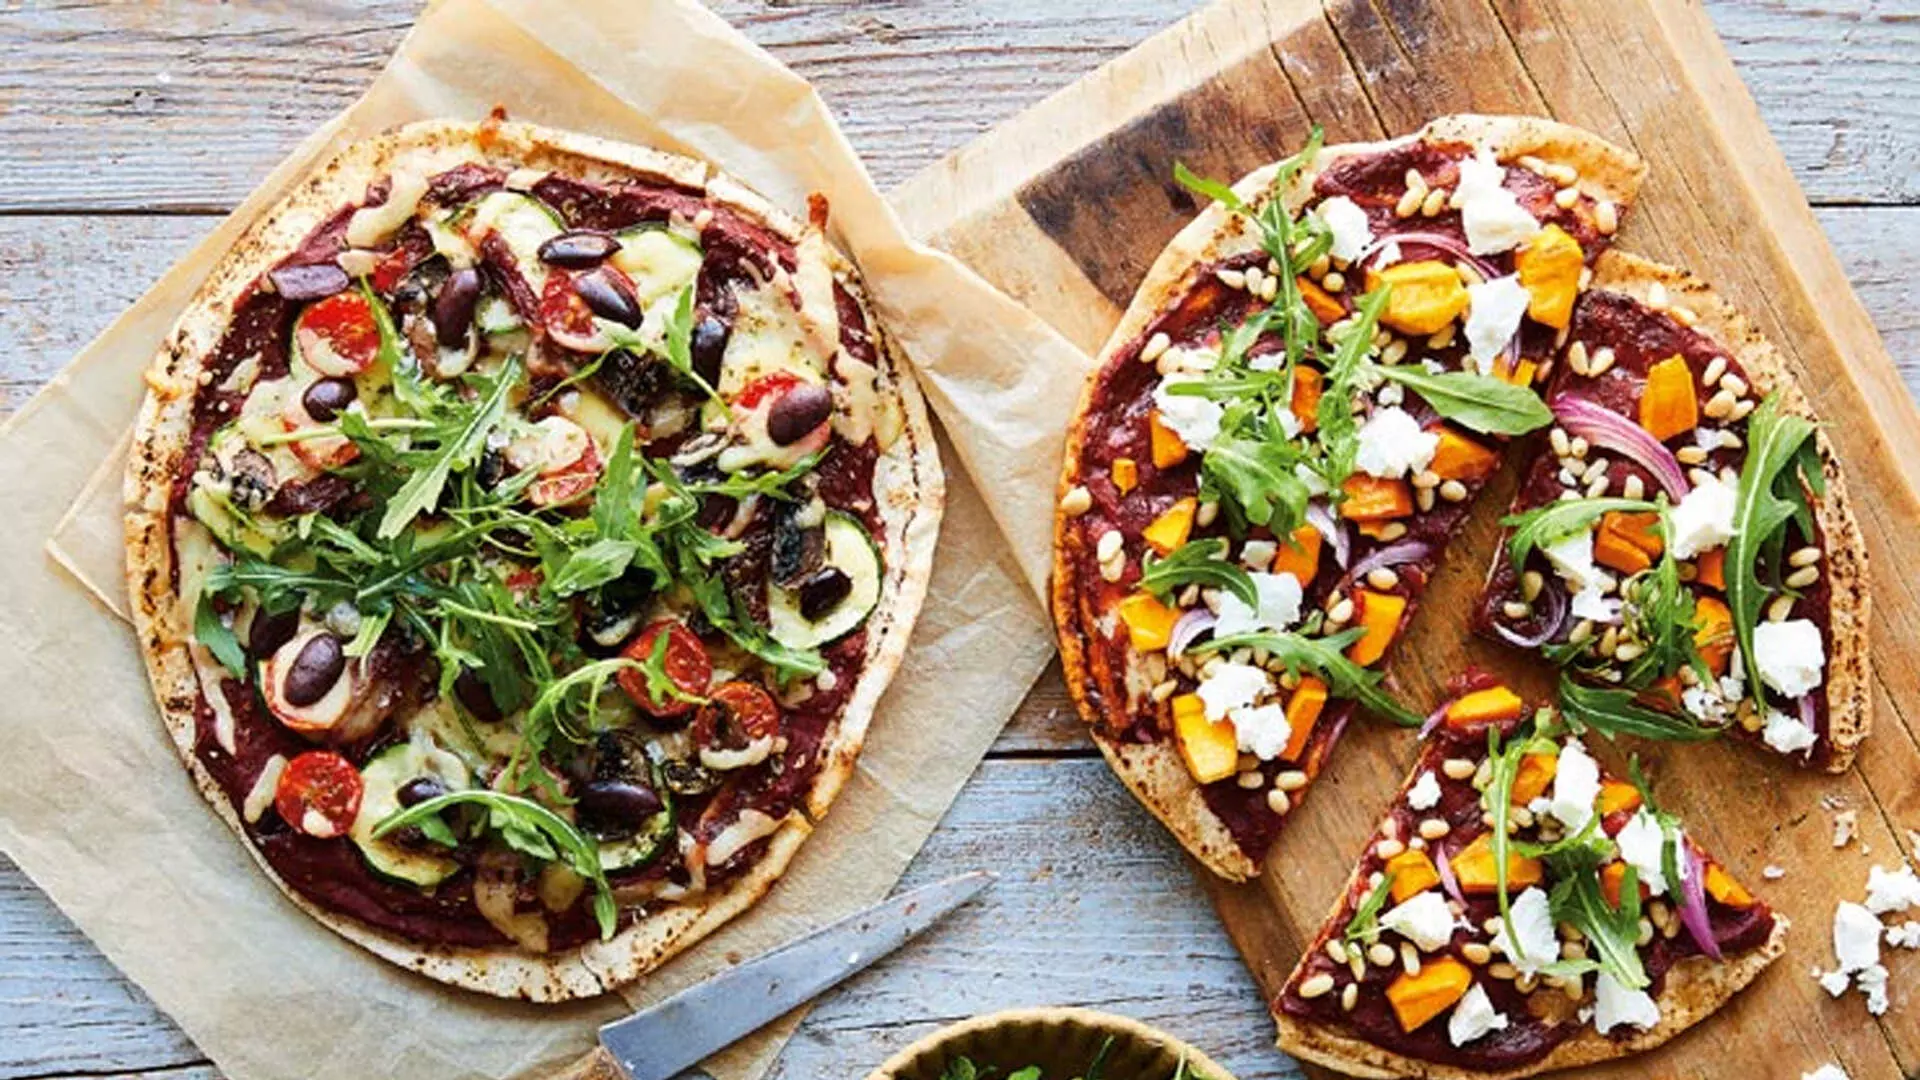 घर पर आसानी से बनाएं फ्लैटब्रेड पिज़्ज़ा, रेसिपी